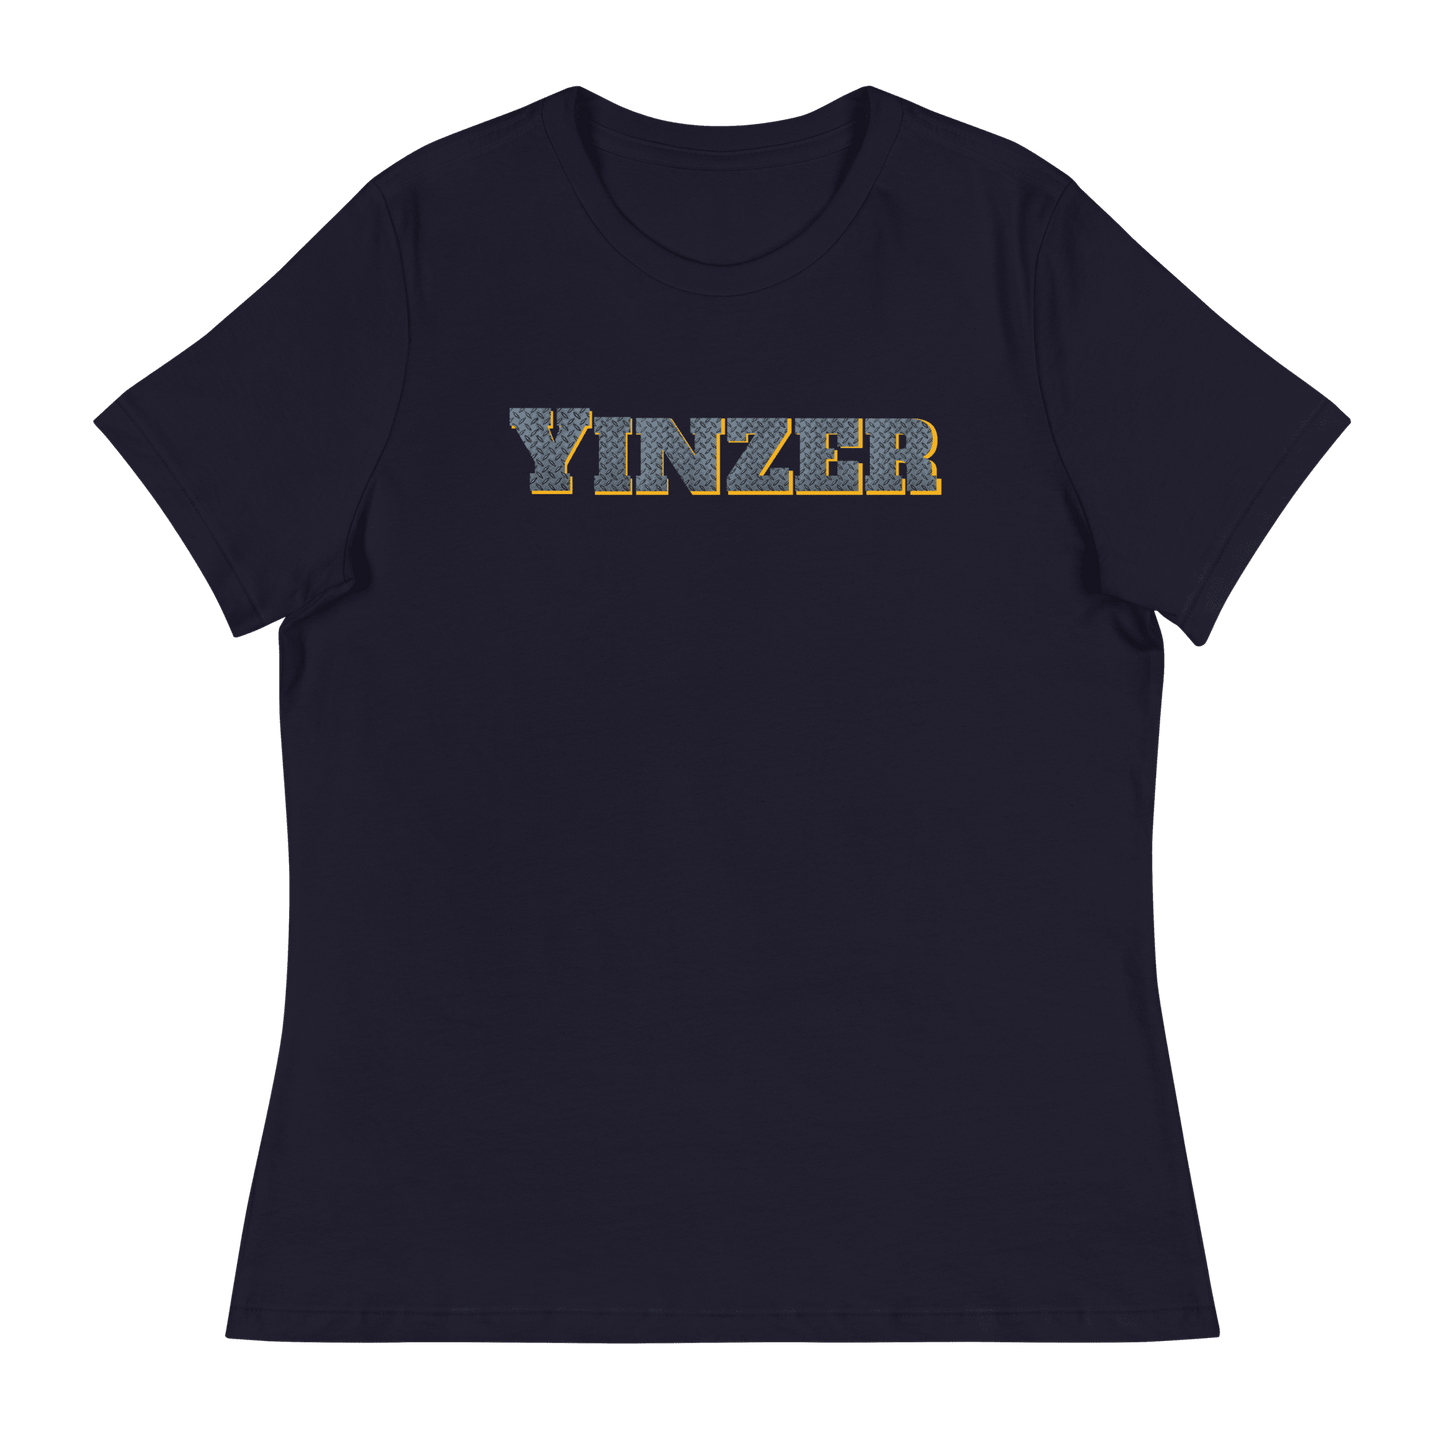 Yinzer Women's T-Shirt Yinzergear Navy S 